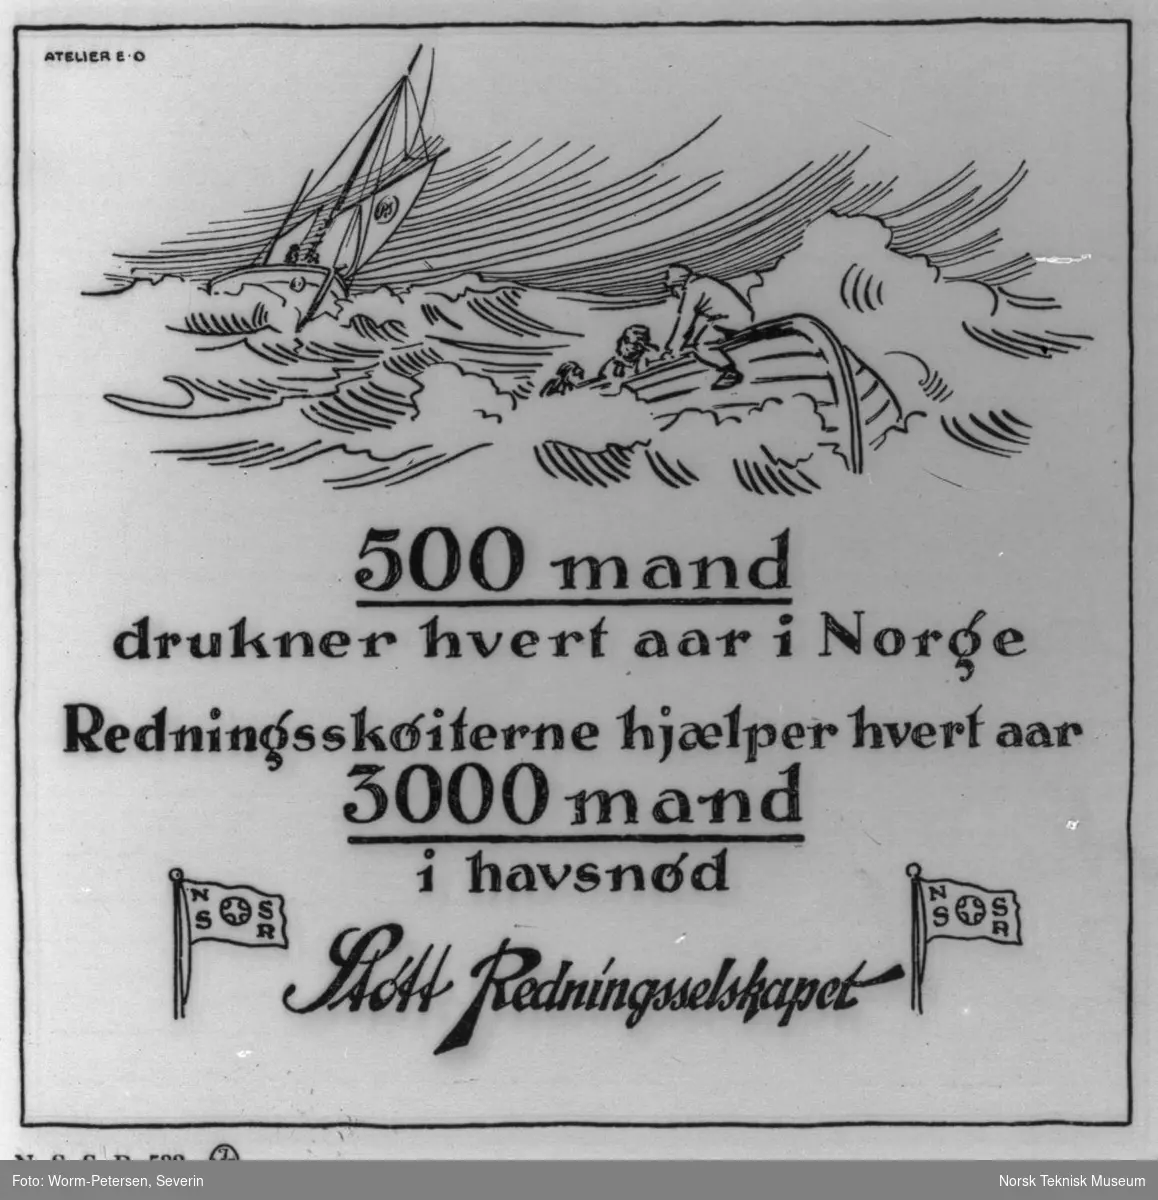 500 mand drukner hvert aar i Norge. Redningsskøiterne hjælper hvert aar 3000 mand i havsnød. Støtt Redningsselskapet